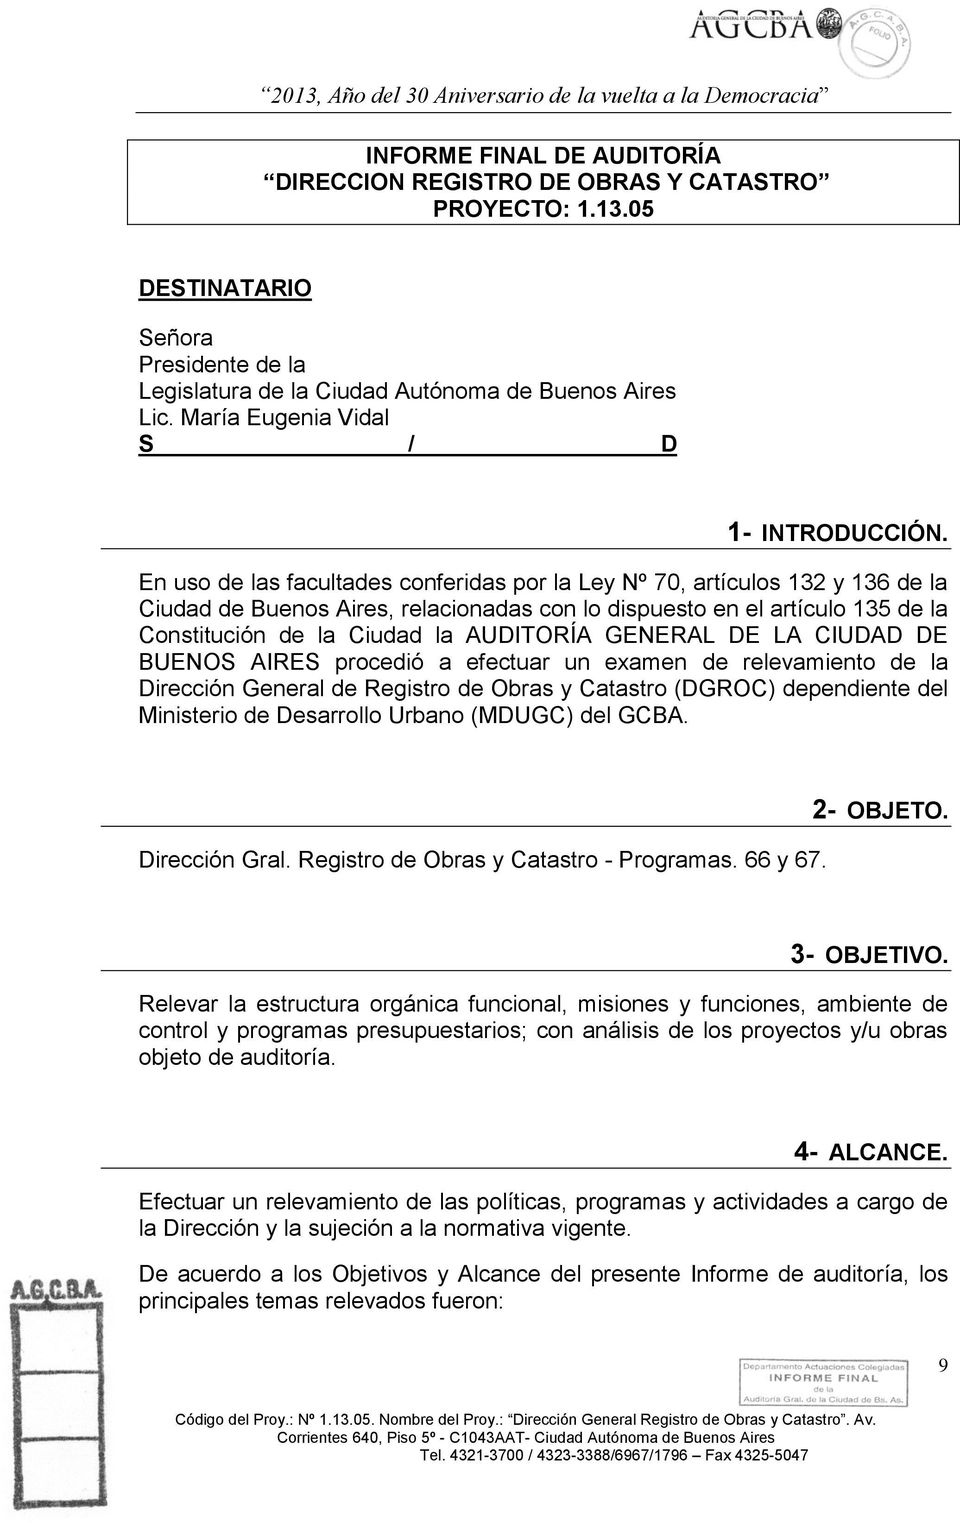 En uso de las facultades conferidas por la Ley Nº 70, artículos 132 y 136 de la Ciudad de Buenos Aires, relacionadas con lo dispuesto en el artículo 135 de la Constitución de la Ciudad la AUDITORÍA